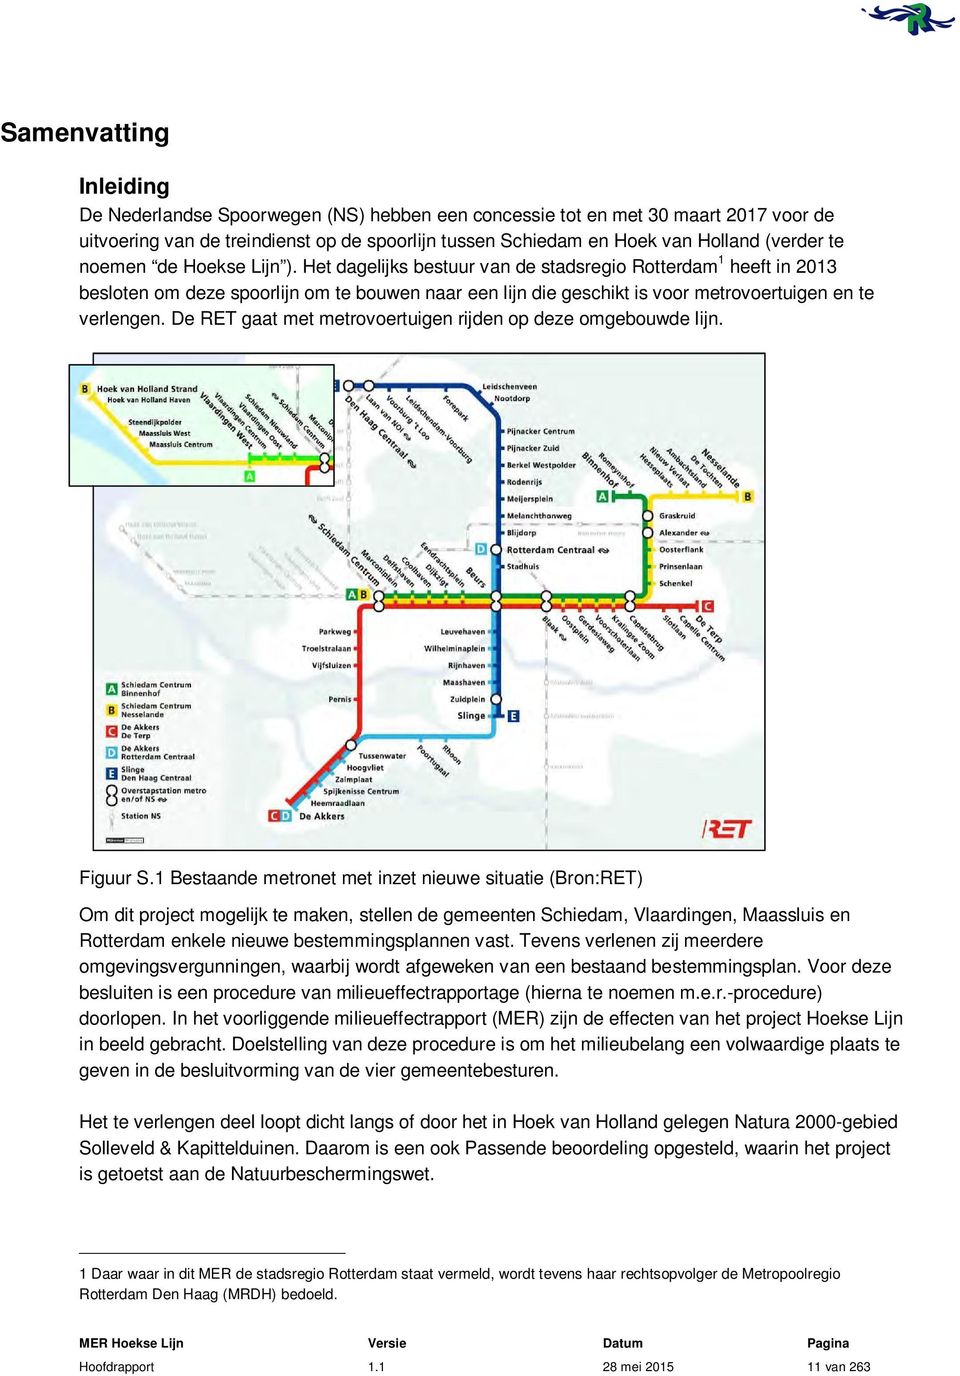 Het dagelijks bestuur van de stadsregio Rotterdam 1 heeft in 2013 besloten om deze spoorlijn om te bouwen naar een lijn die geschikt is voor metrovoertuigen en te verlengen.